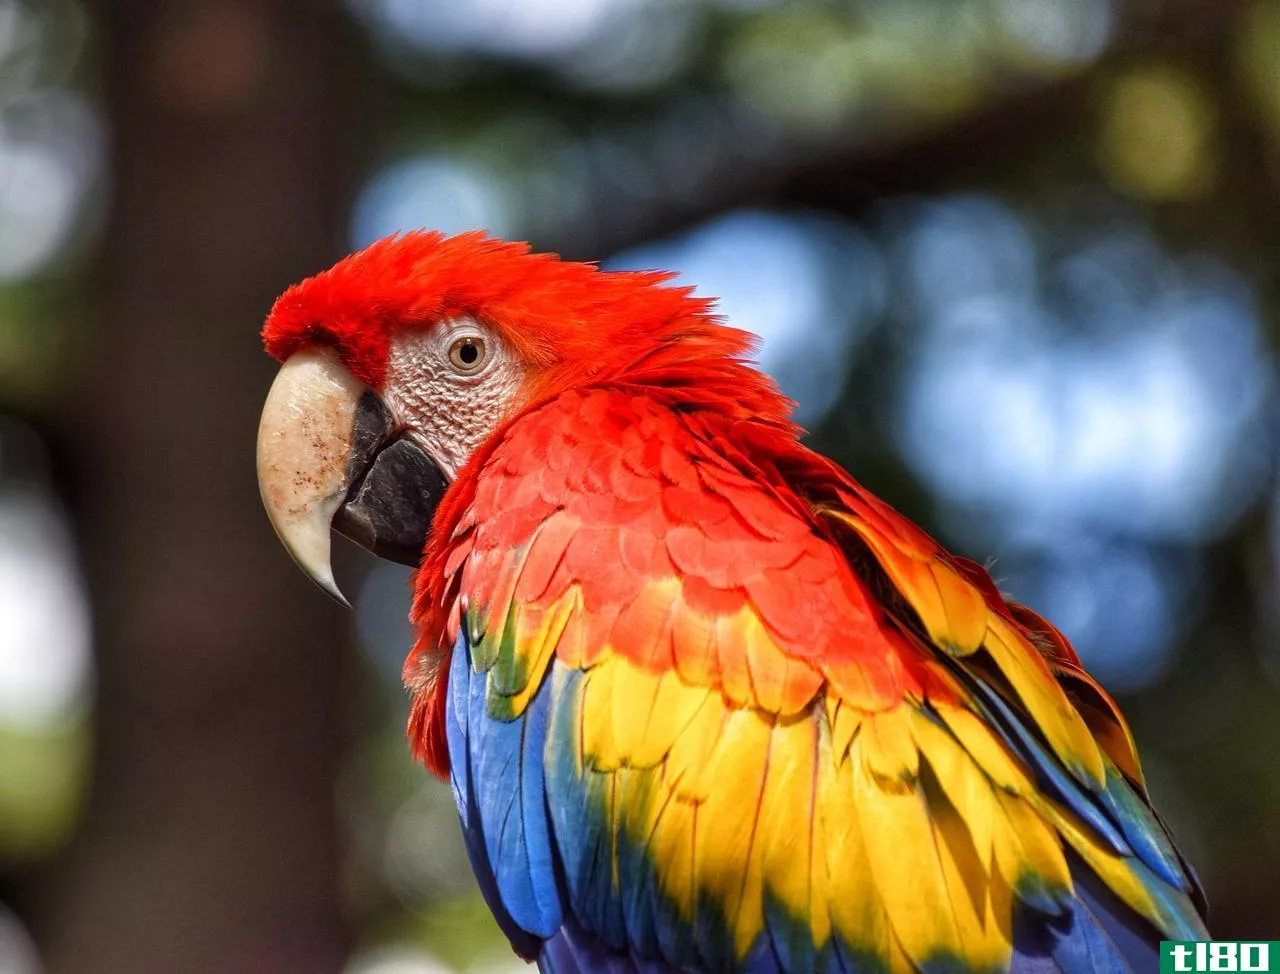 鹦鹉(parrot)和金刚鹦鹉(macaw)的区别